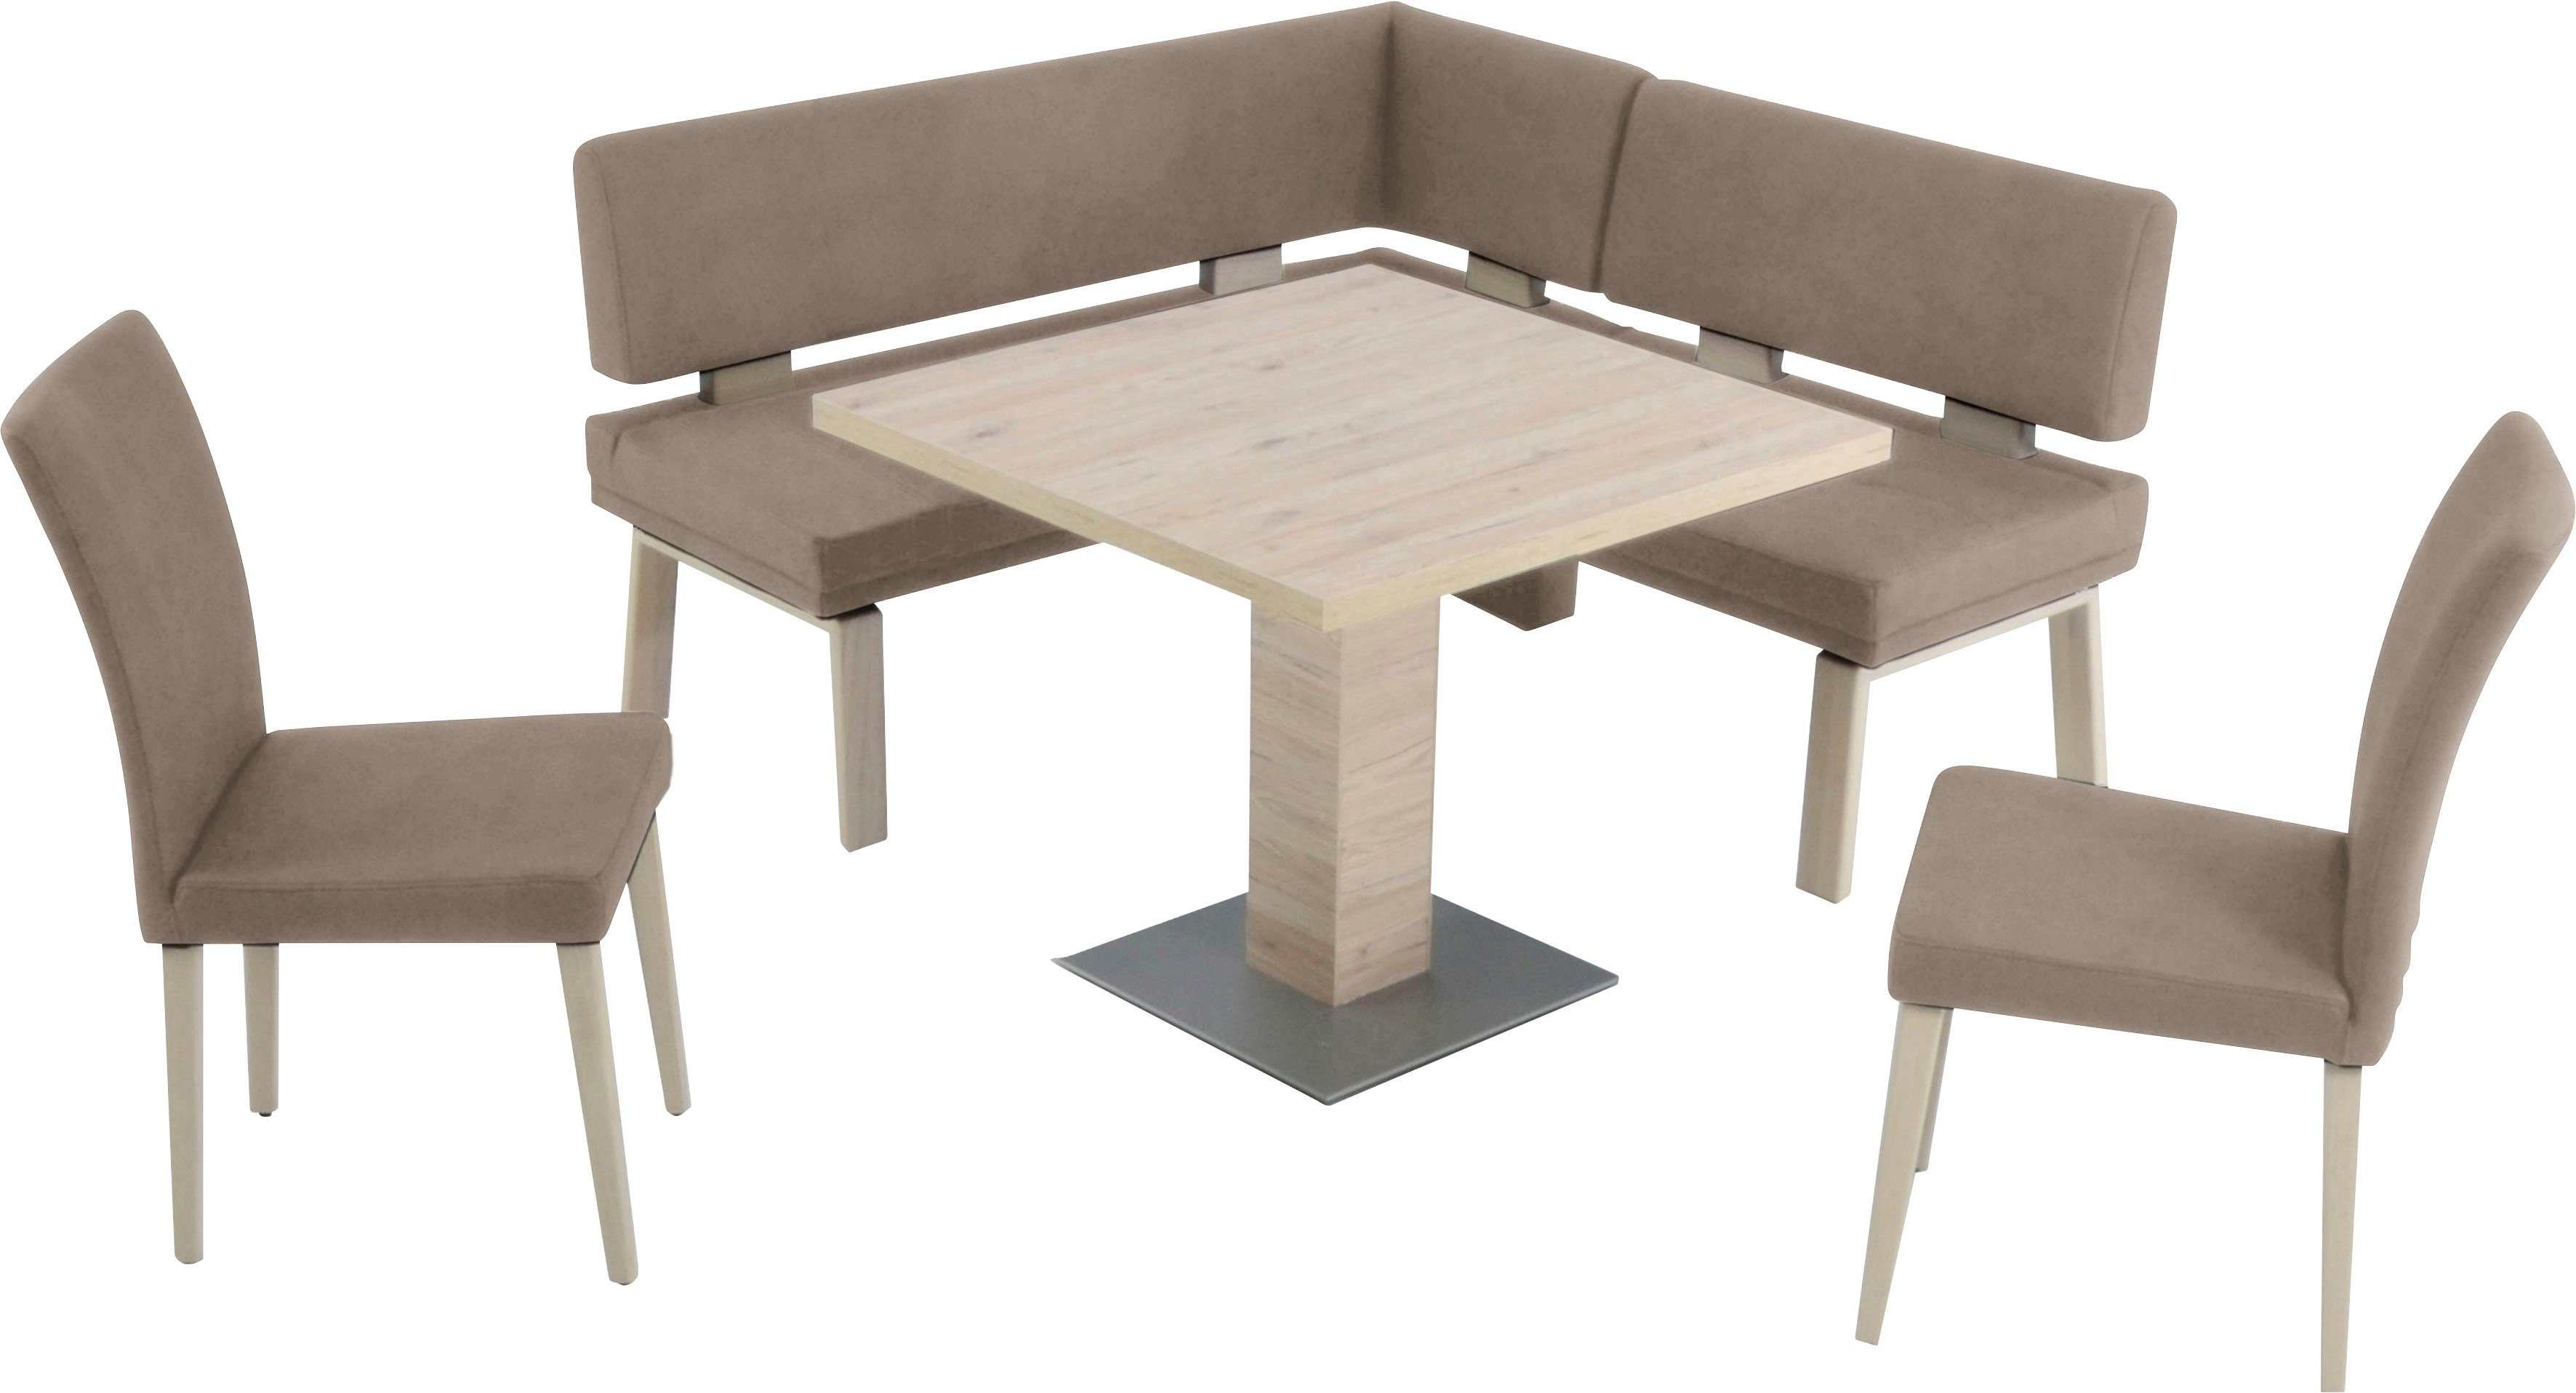 K+W Komfort & Wohnen Eckbankgruppe Santos I, gleichschenklig 157cm, zwei 4-Fußholzstühle und Tisch 90x90cm, Eiche sand